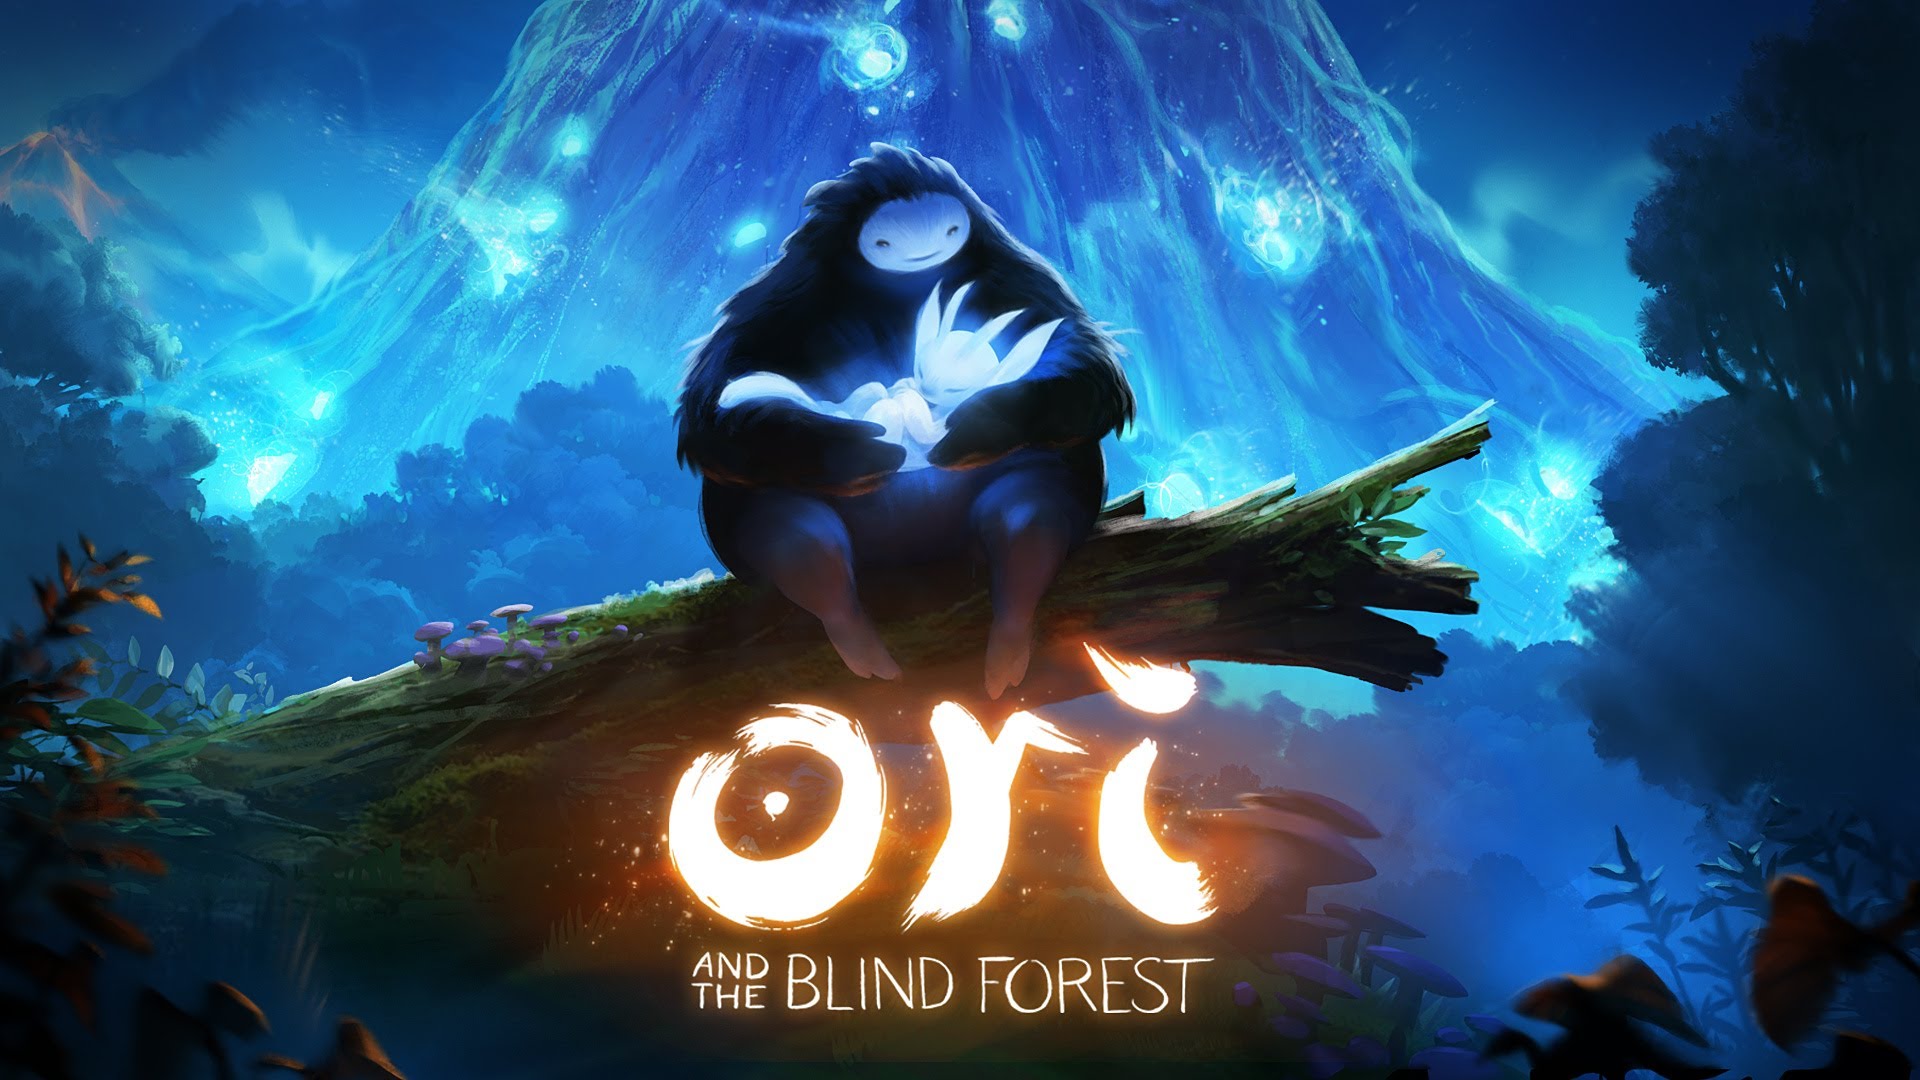 Đánh giá Ori and the Blind Forest trên Xbox One: Với đánh giá cao từ các đầu báo và game thủ trên toàn thế giới, Ori and the Blind Forest trên Xbox One hoàn toàn đáng để bạn dành thời gian để khám phá. Cùng xem những hình ảnh tuyệt đẹp và trải nghiệm trò chơi tuyệt vời này ngay hôm nay.